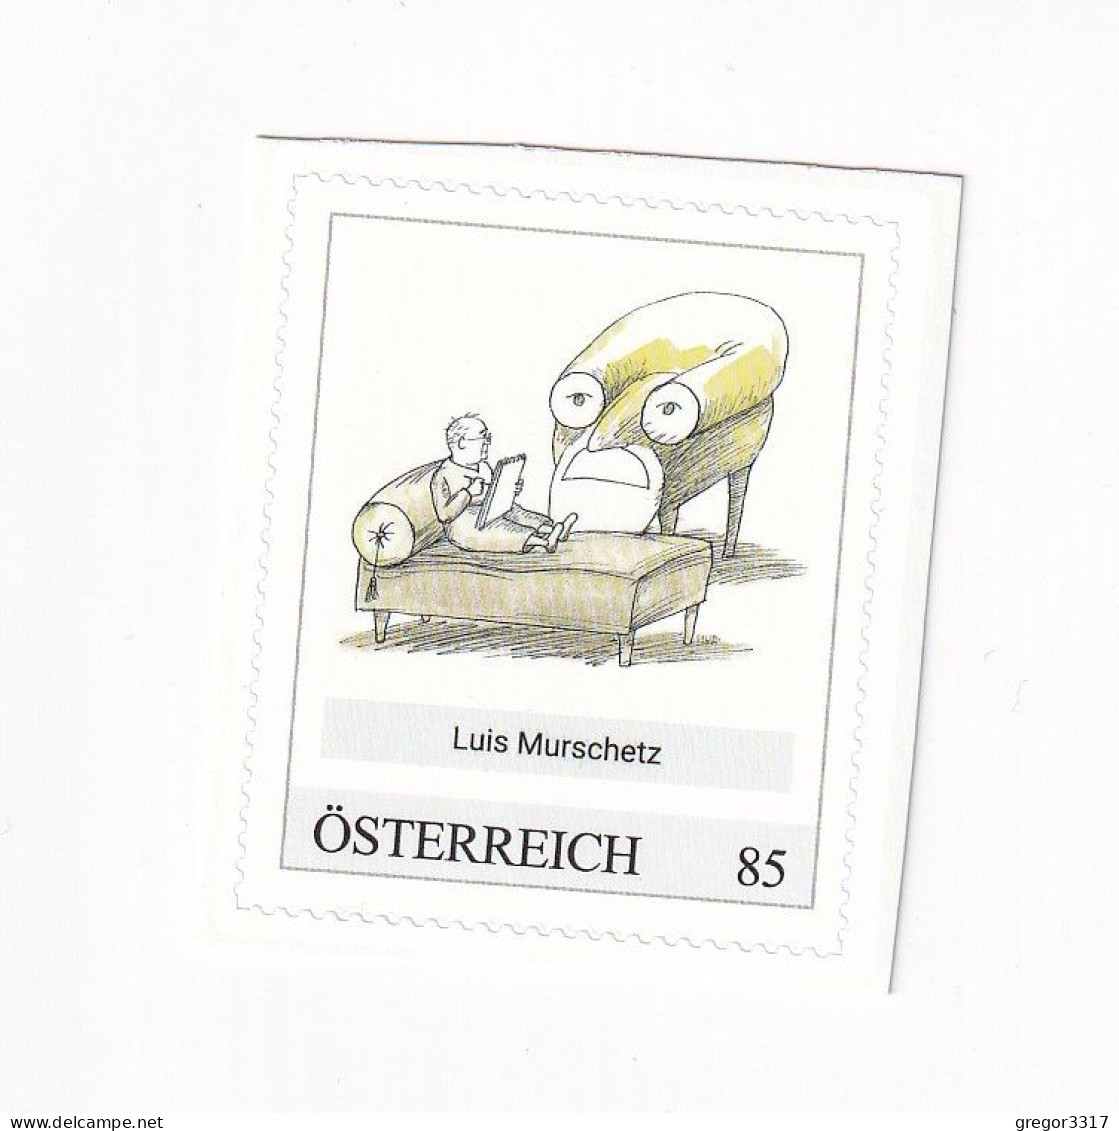 ÖSTERREICH - KARIKATURMUSEUM KREMS - LUIS MURSCHETZ  - Personalisierte Briefmarke ** Postfrisch Selbstklebemarke - Timbres Personnalisés